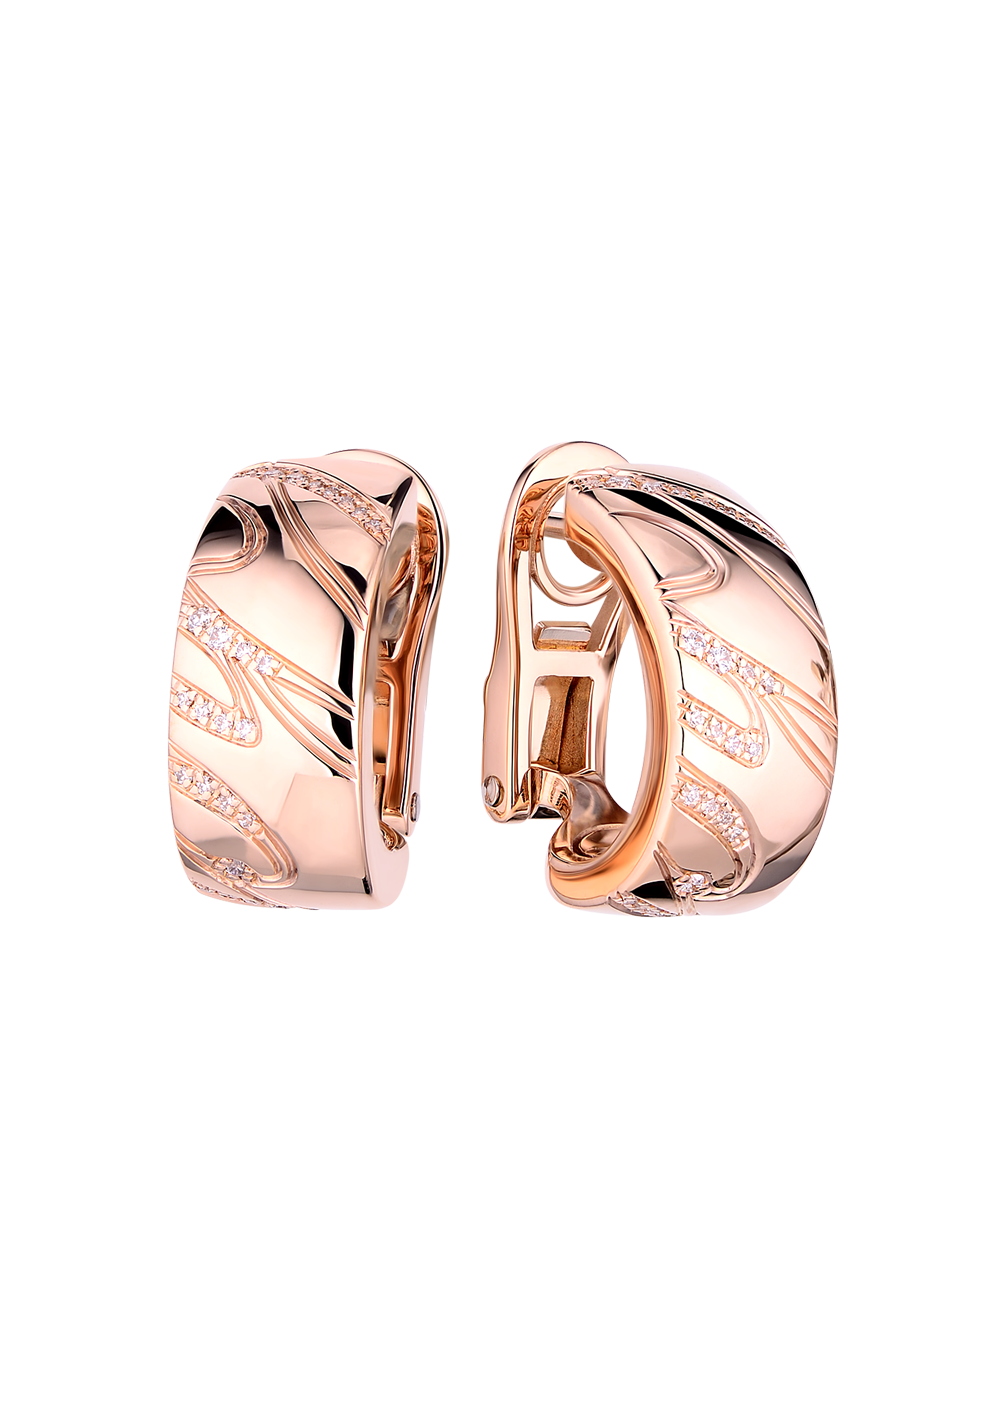 Серьги Chopard Issimo Rose Gold Earrings 837031-5002(1340) №2